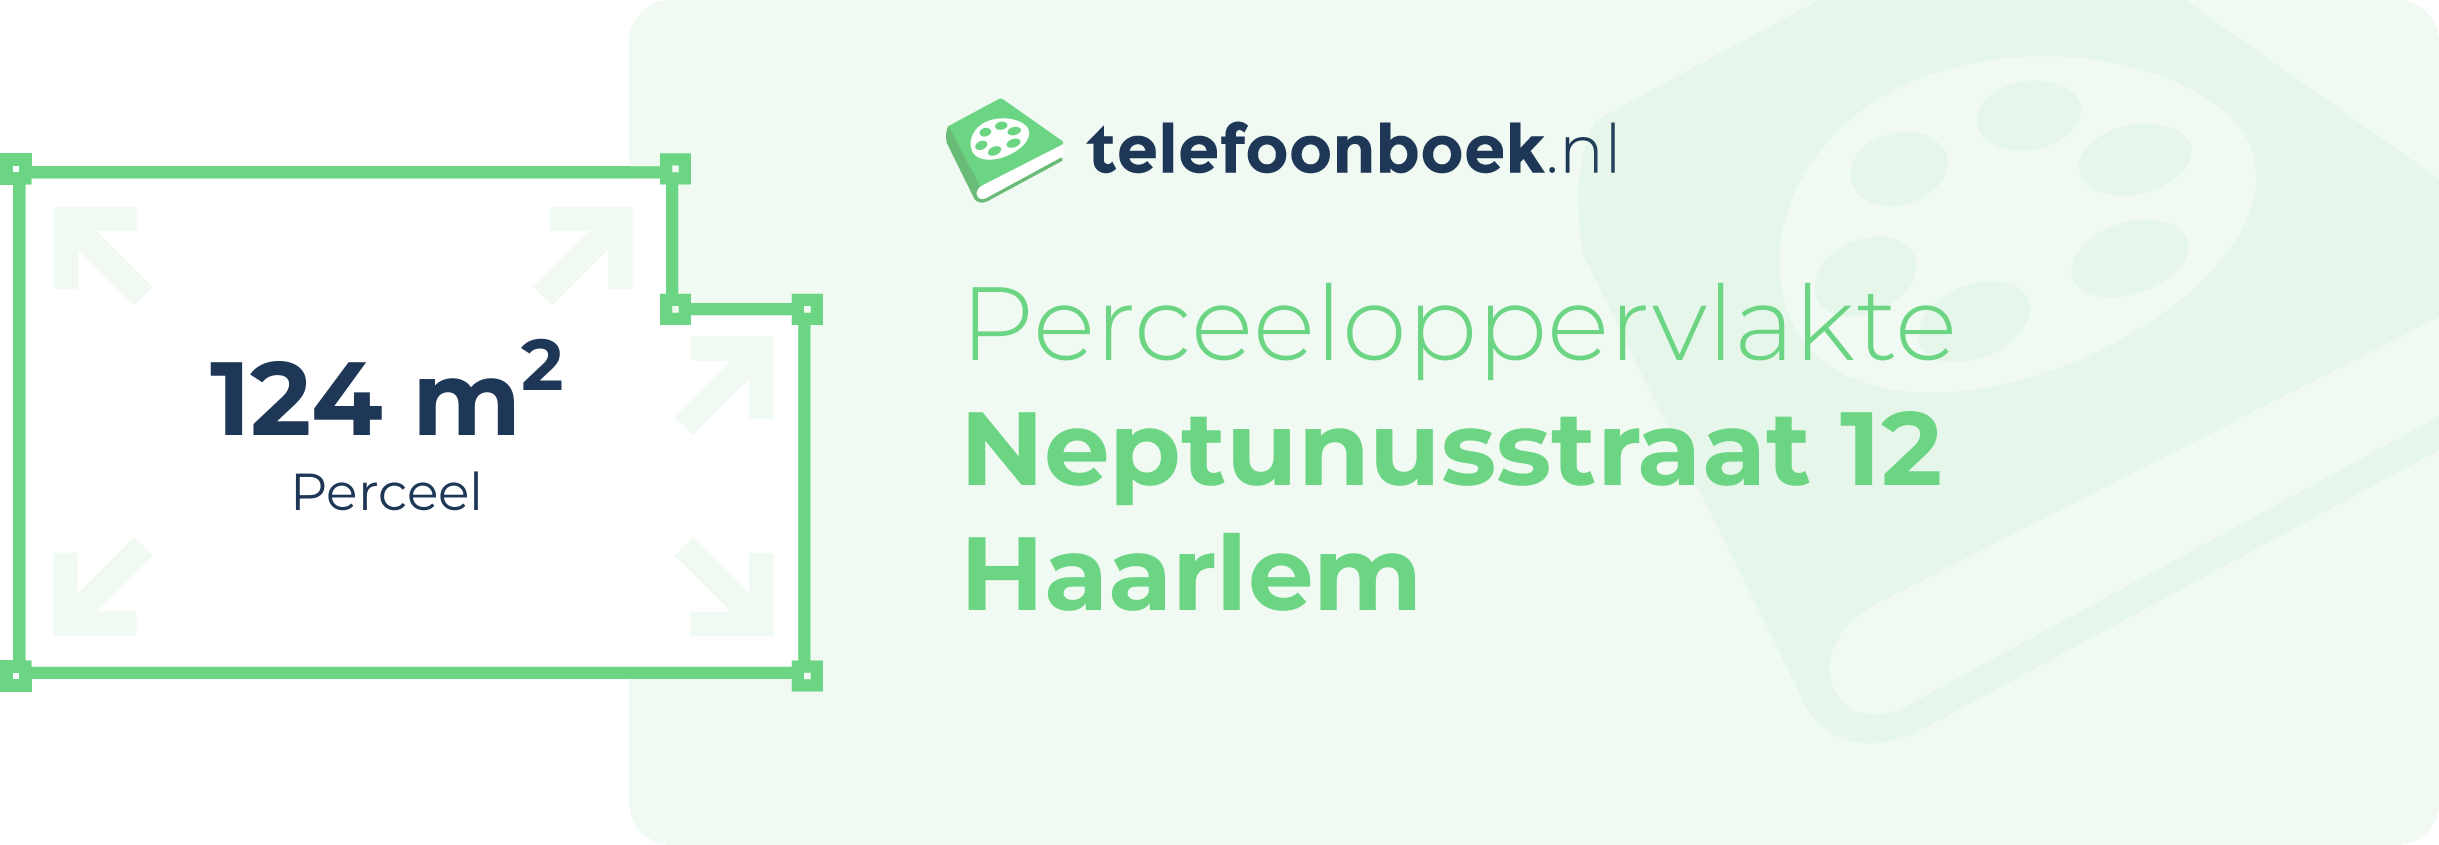 Perceeloppervlakte Neptunusstraat 12 Haarlem